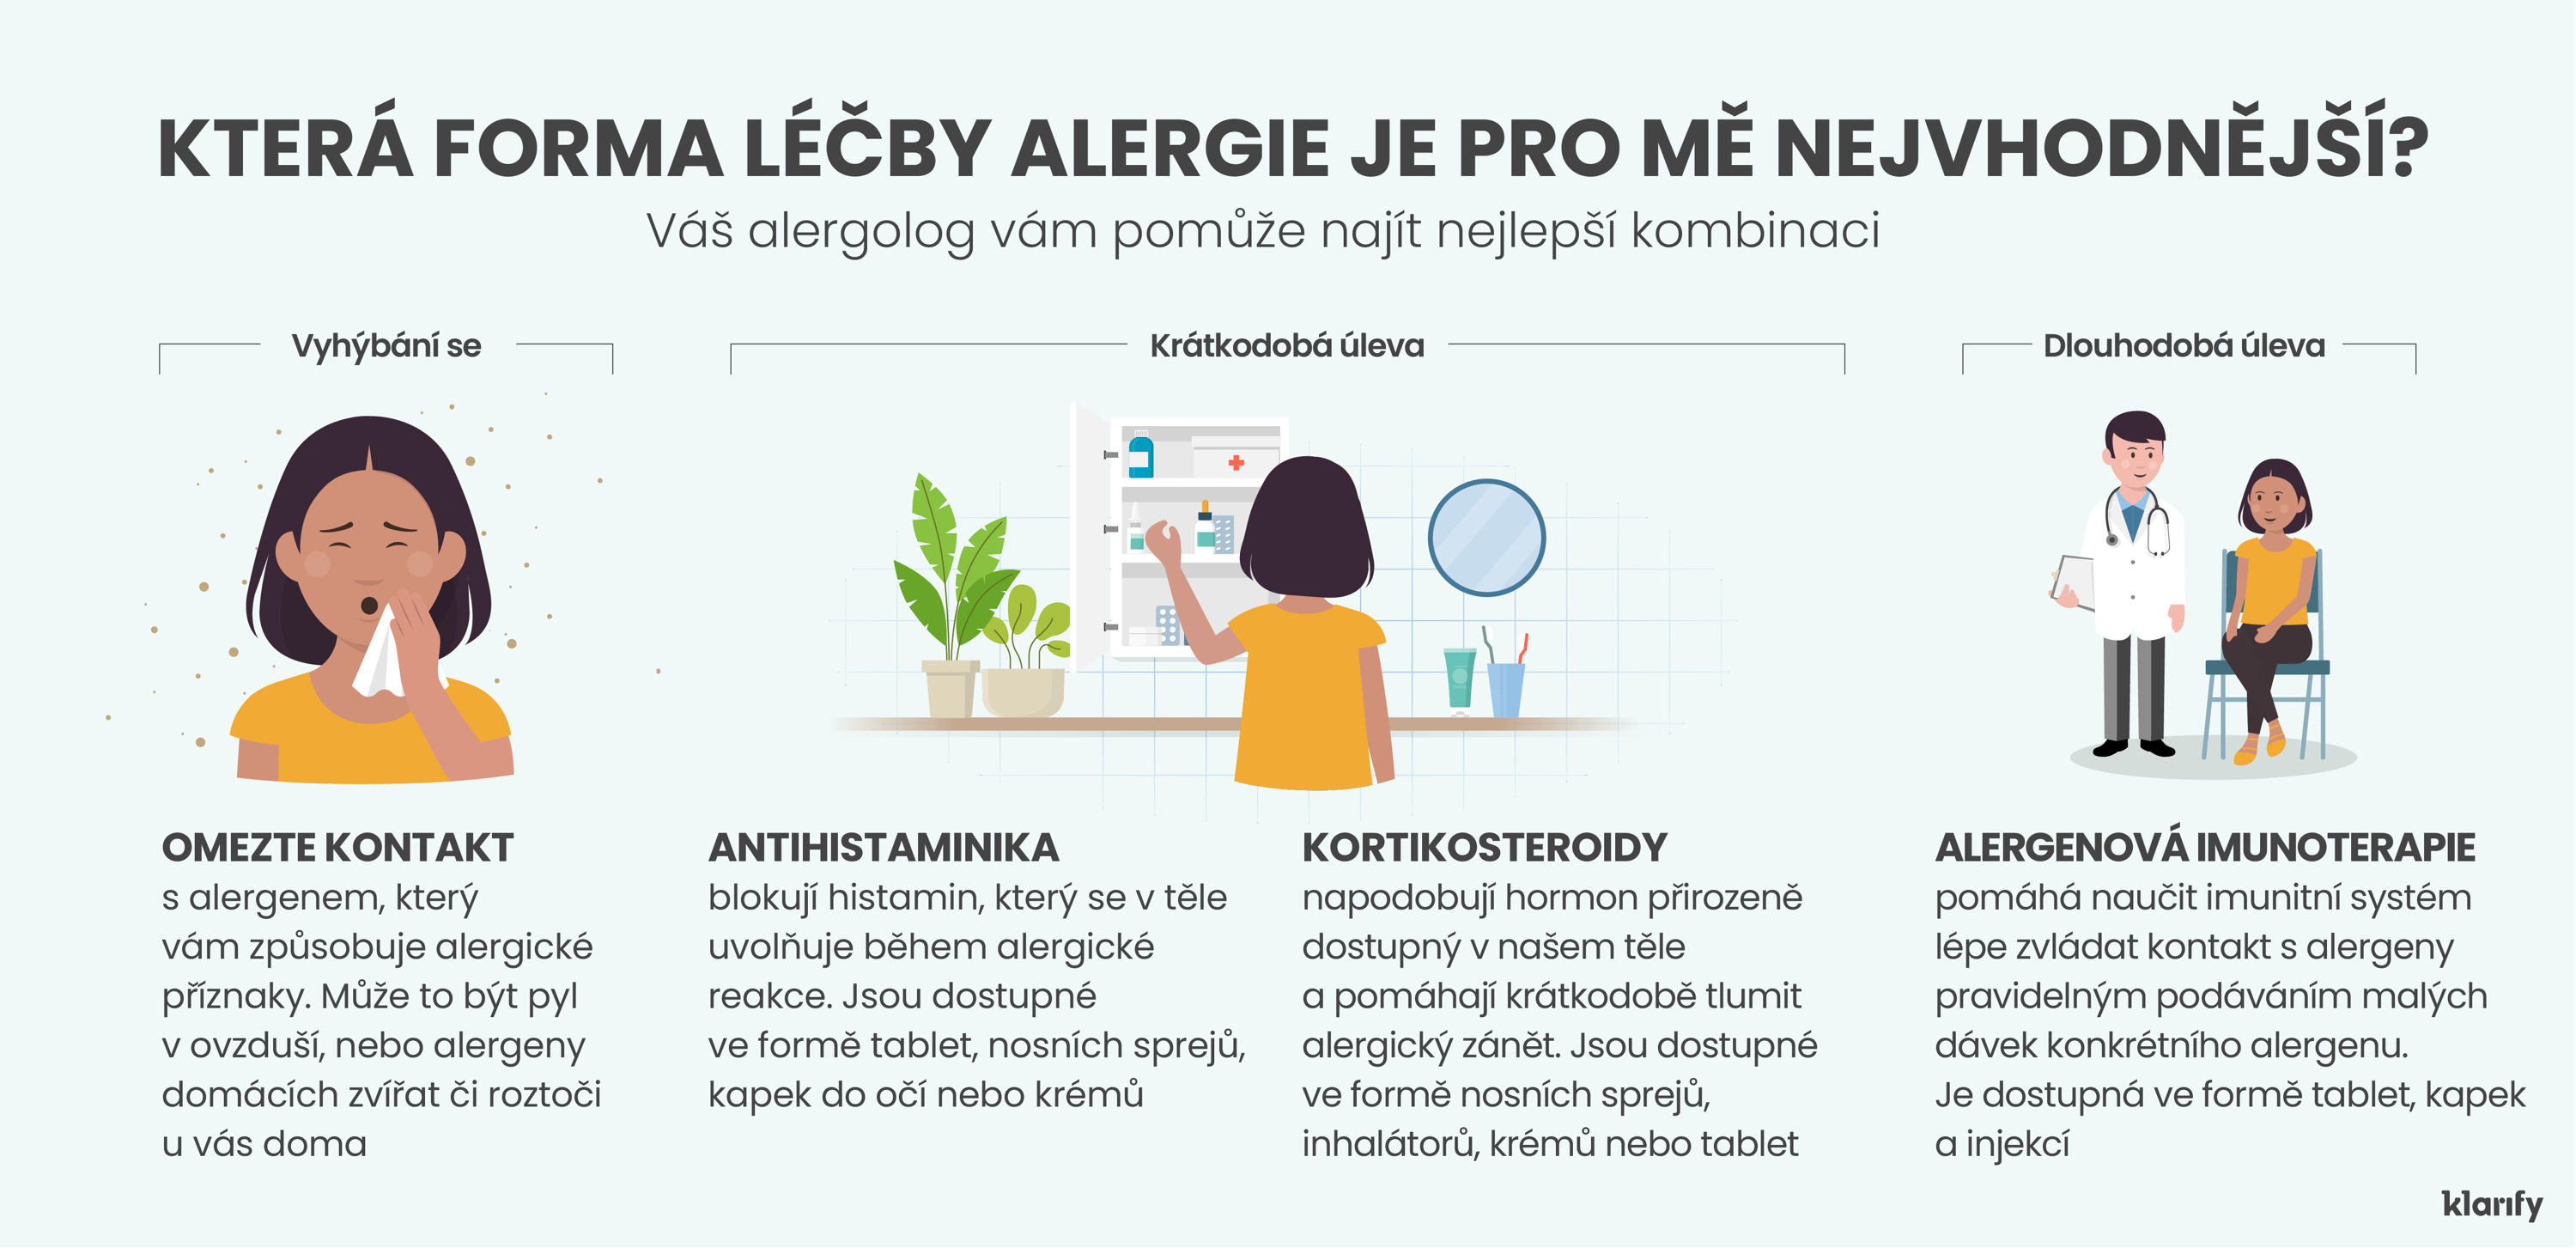 Infografika popisující 3 nejčastější možnosti úlevy od alergie – vyhýbání se alergenu, léčba s krátkodobou úlevou a léčba s dlouhodobou úlevou. Podrobnosti infografiky se nacházejí níže